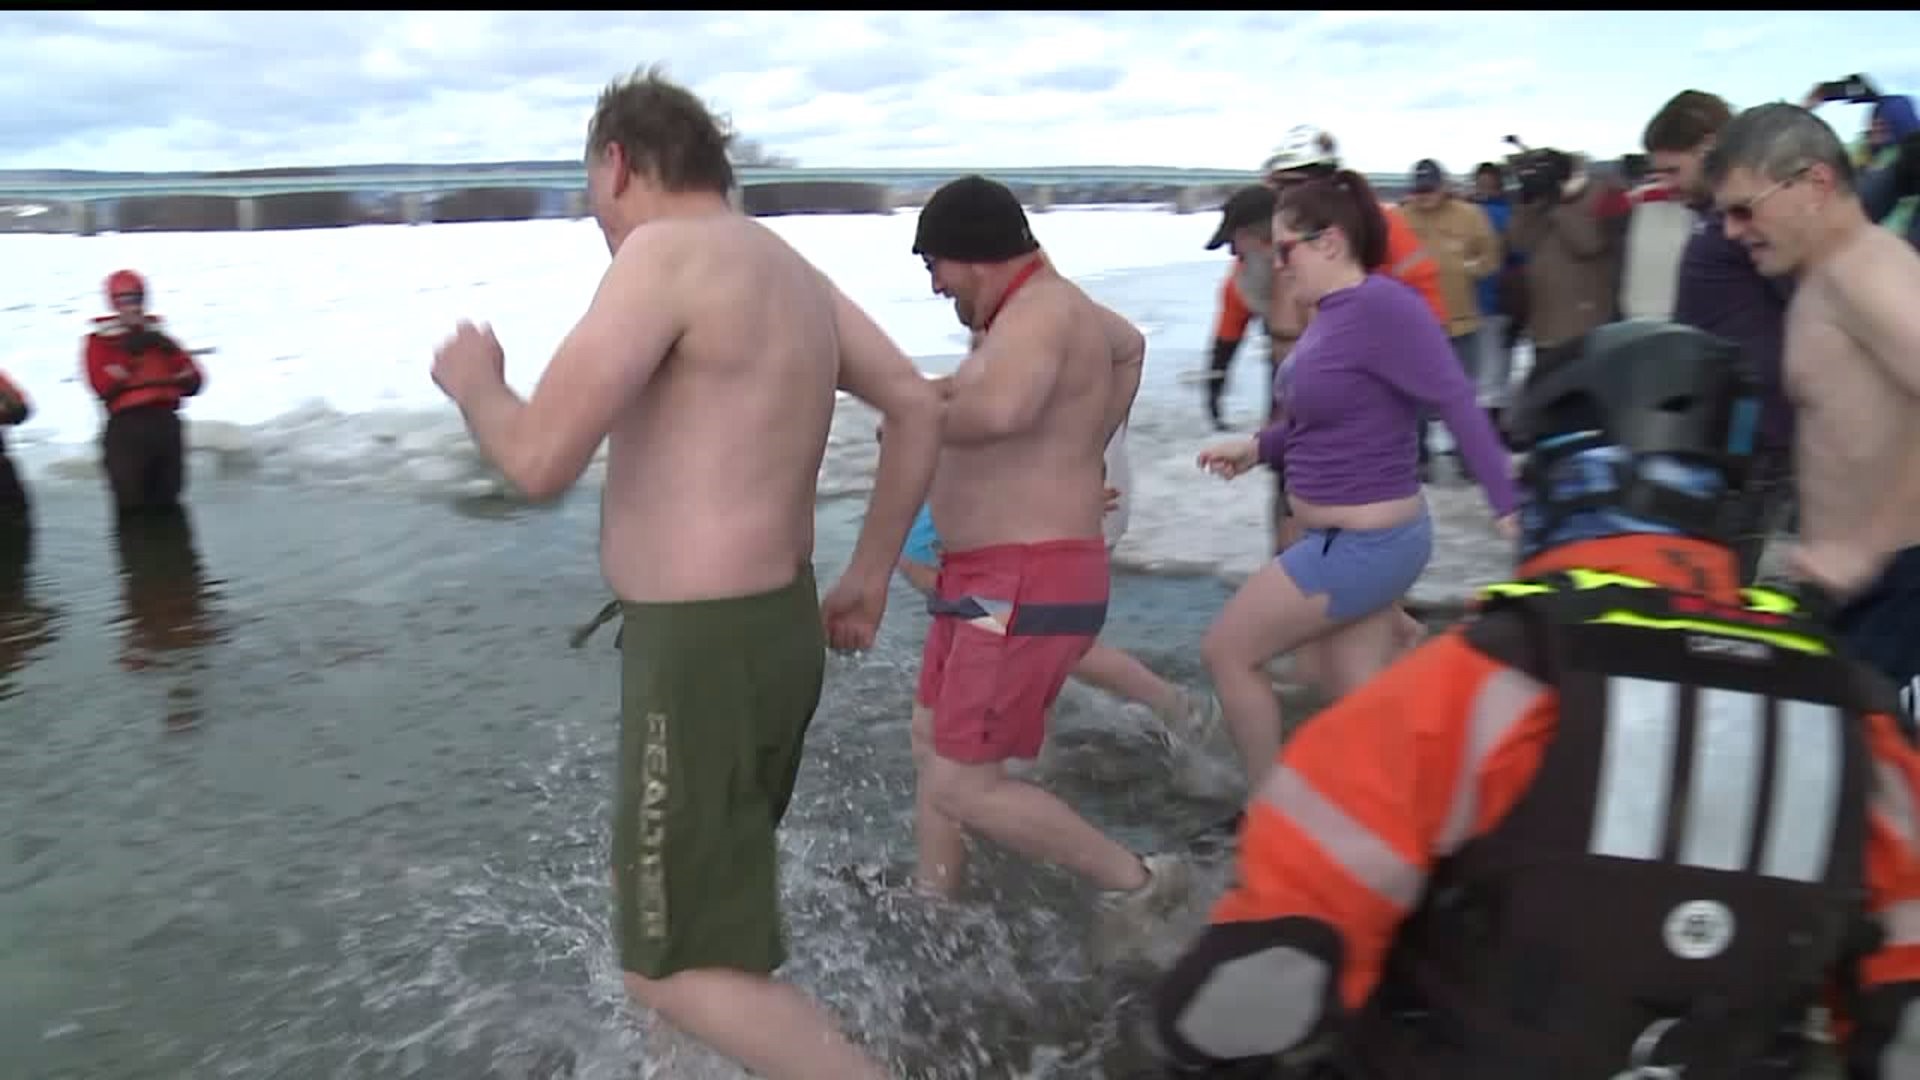 Crowd takes "penguin plunge" despite frigid temperature